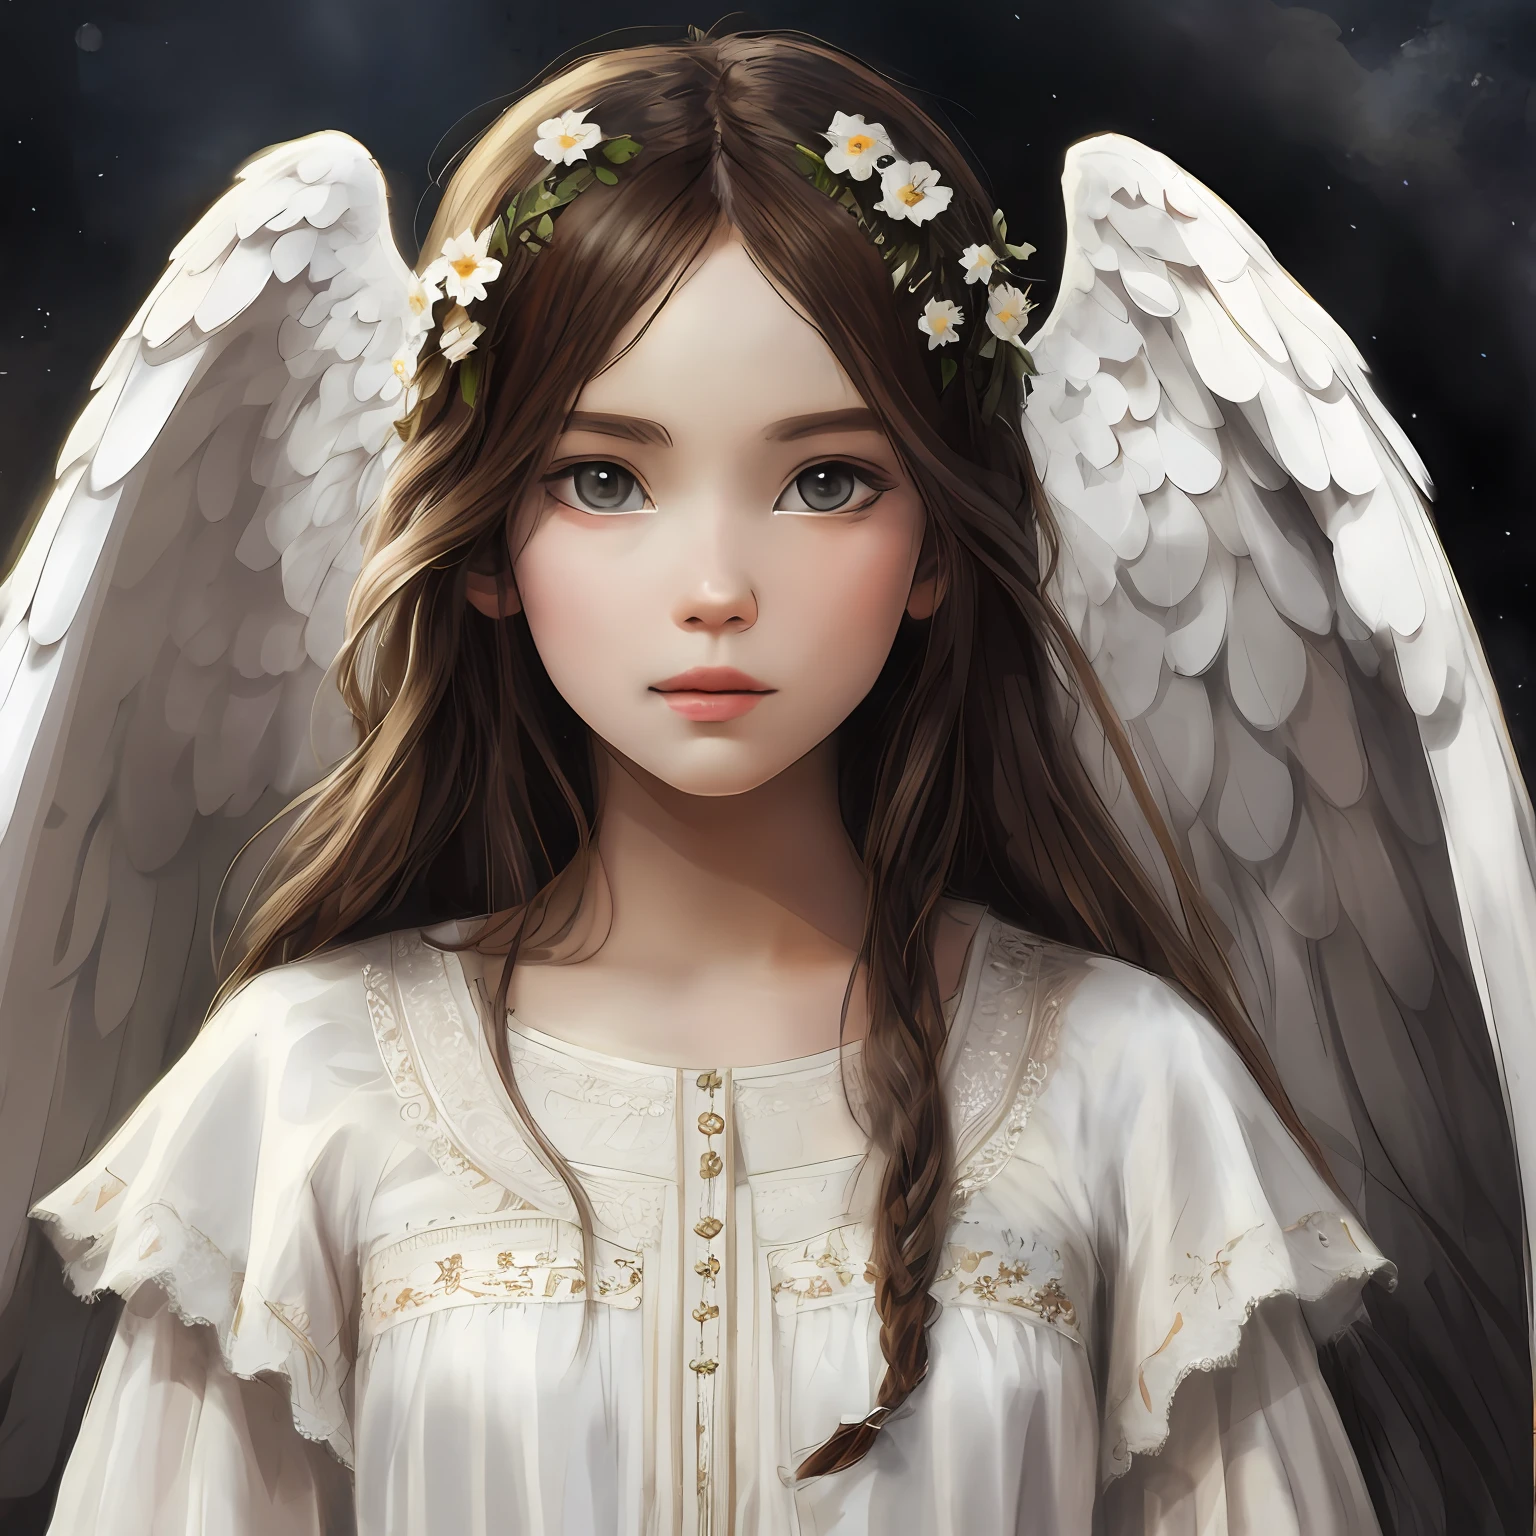 imagem realista de anjo com asas